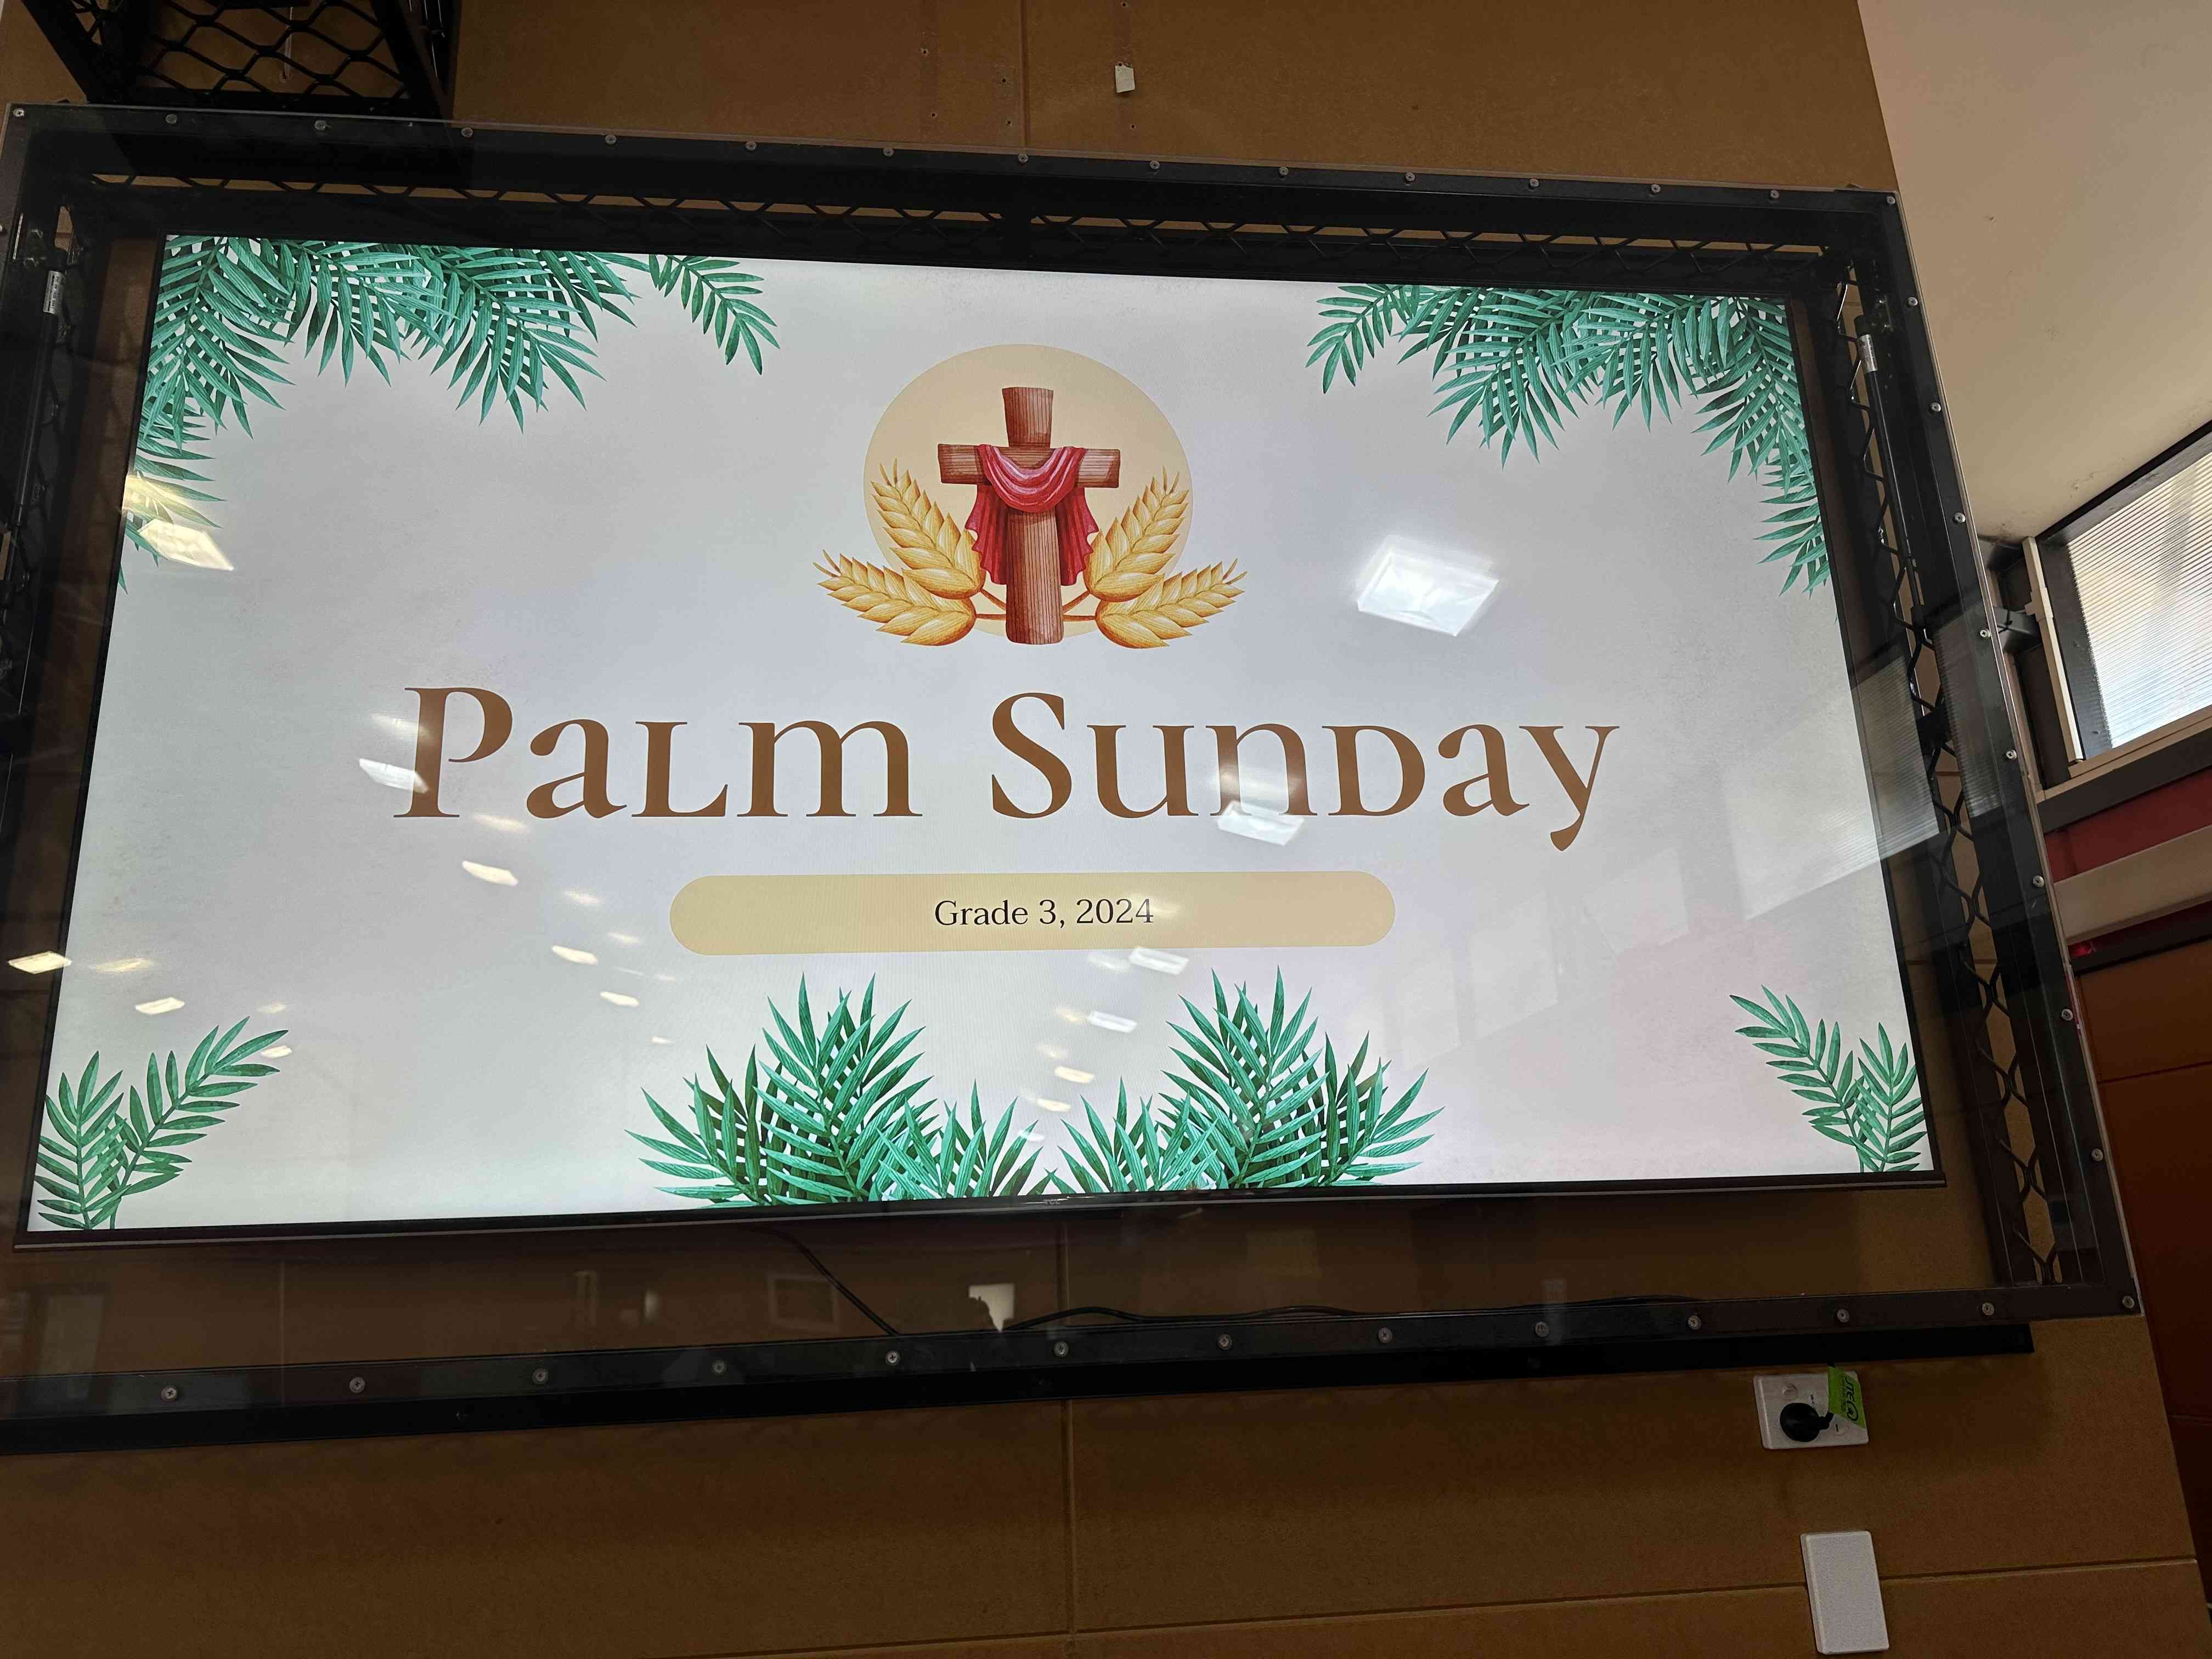 palm7